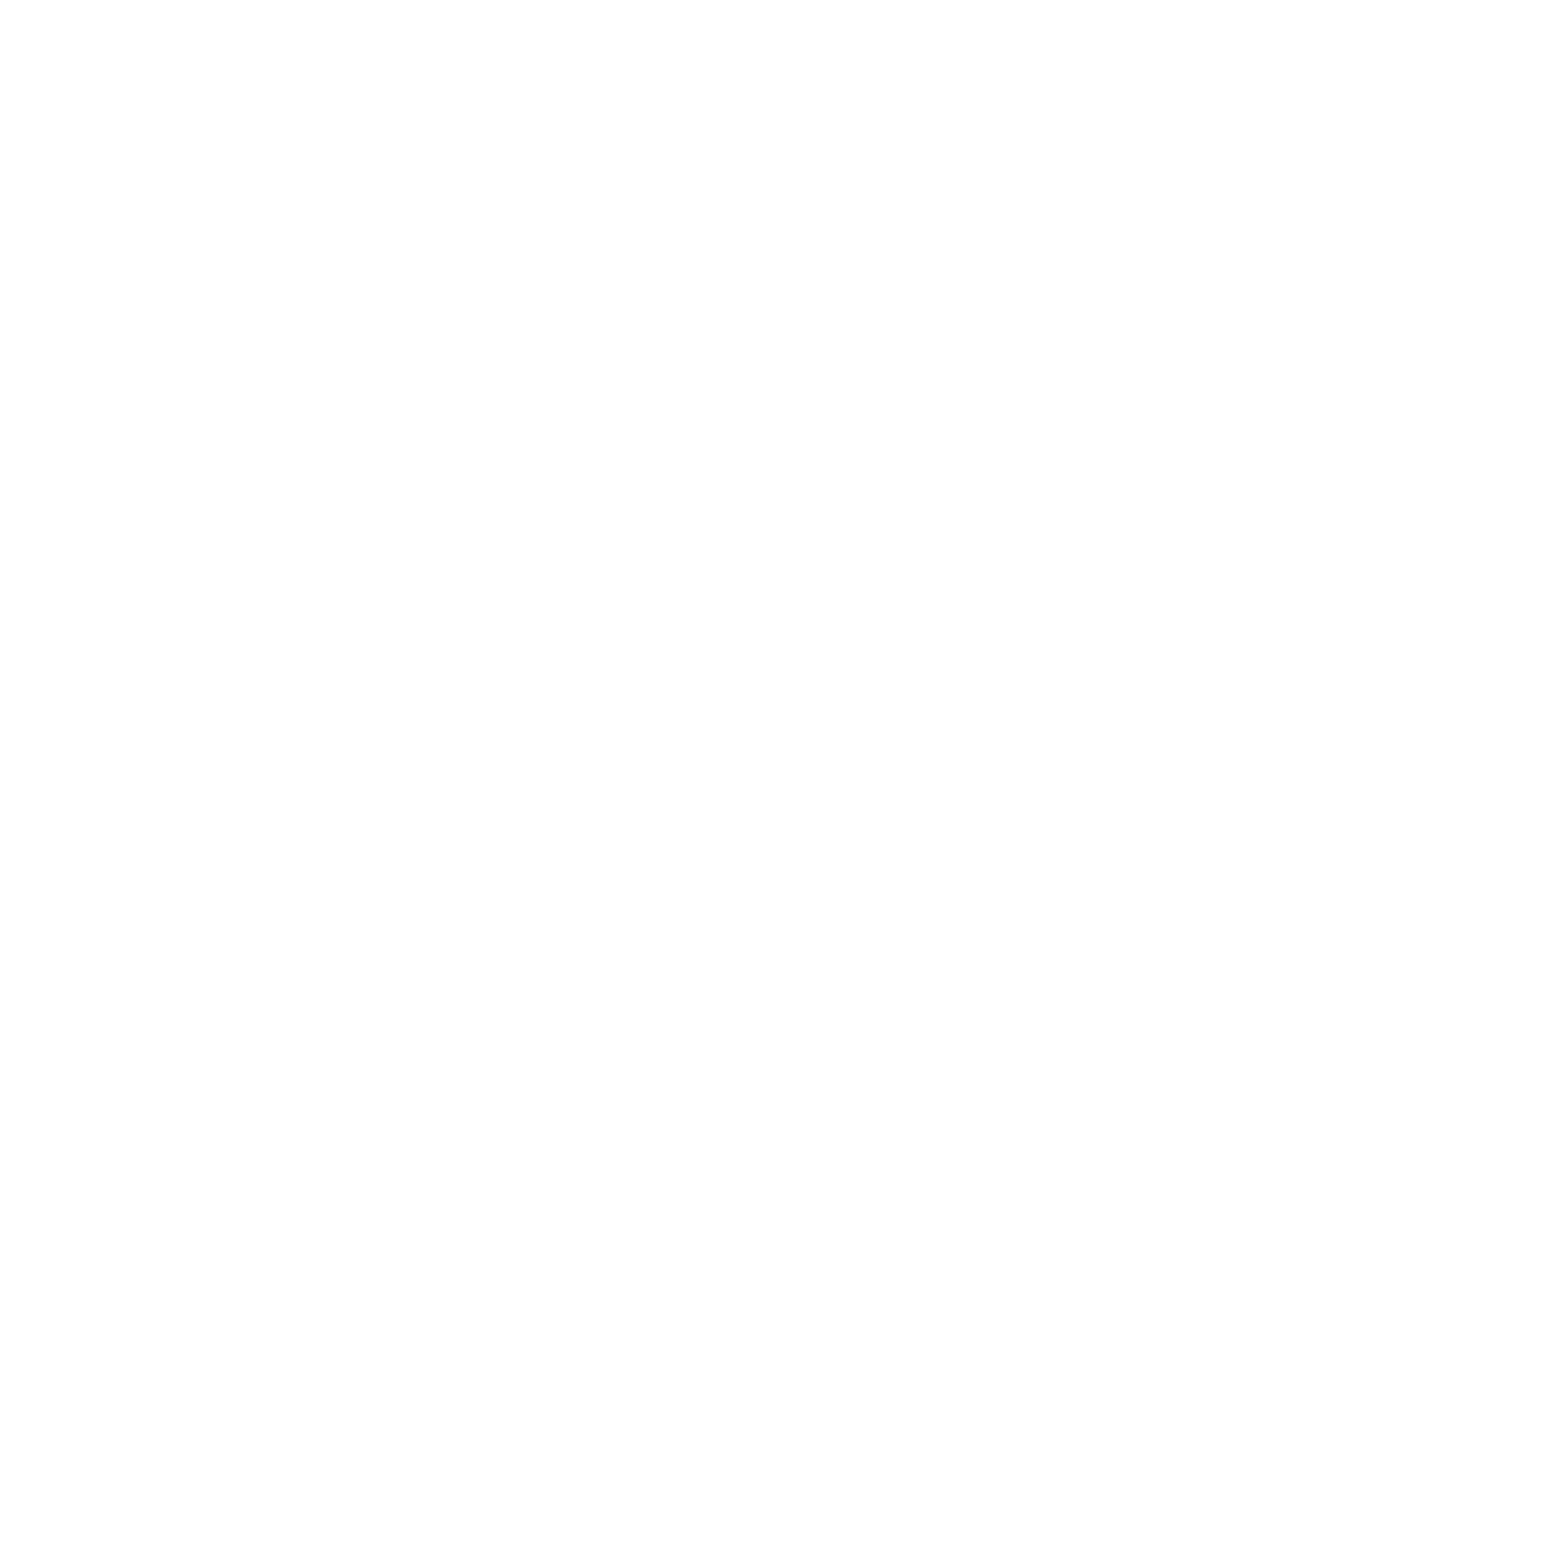 NOS logo for dark backgrounds (transparent PNG)